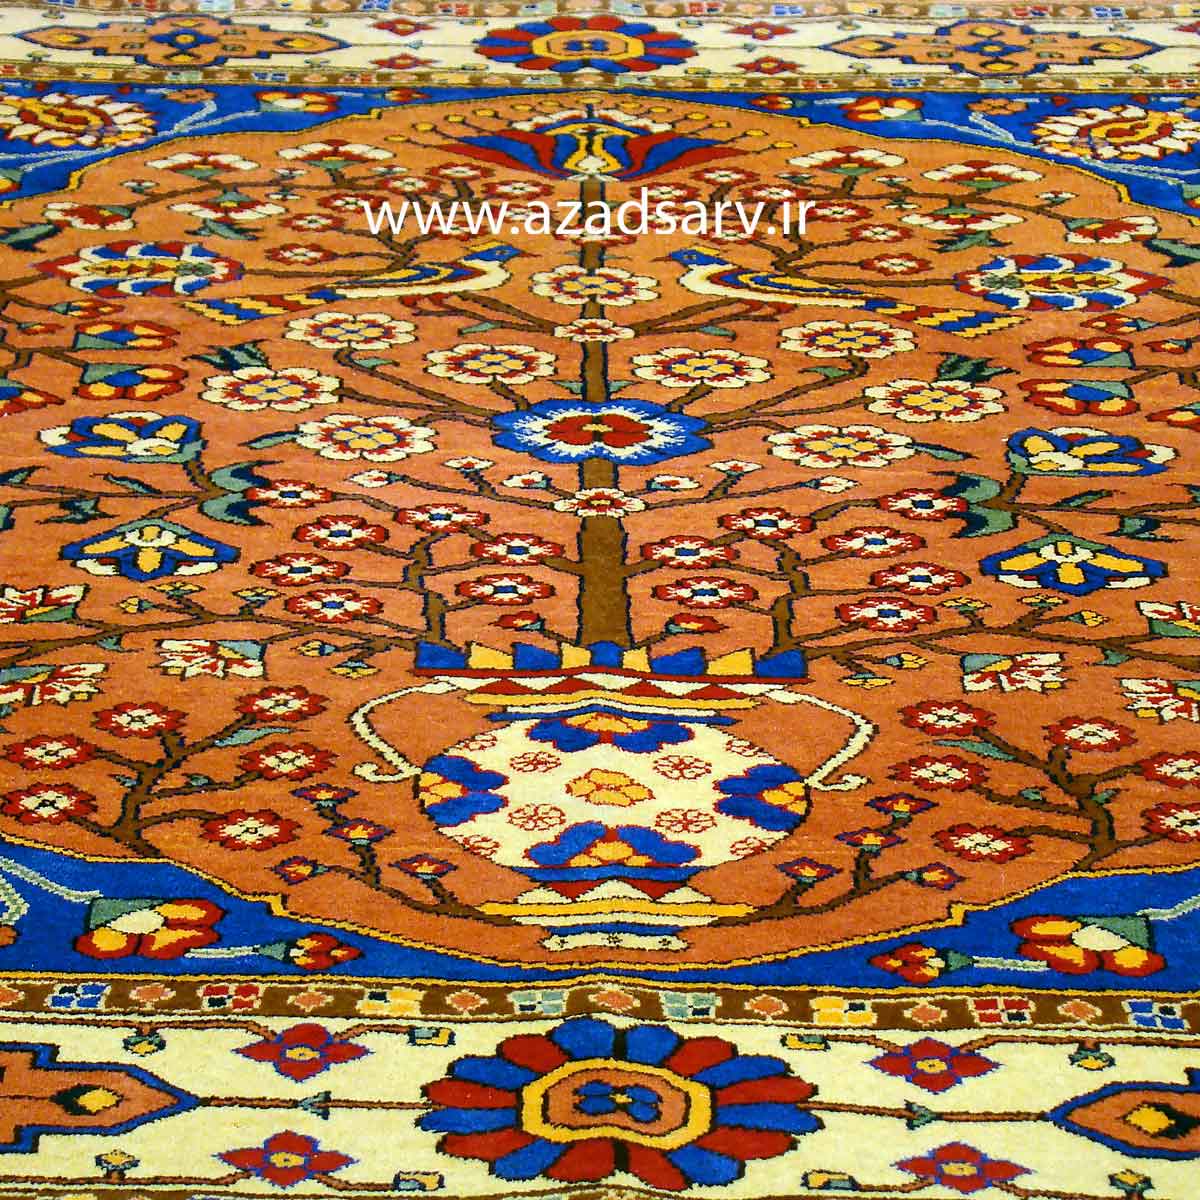 فرش دستباف سه متری آزادسرو azadsarv carpet